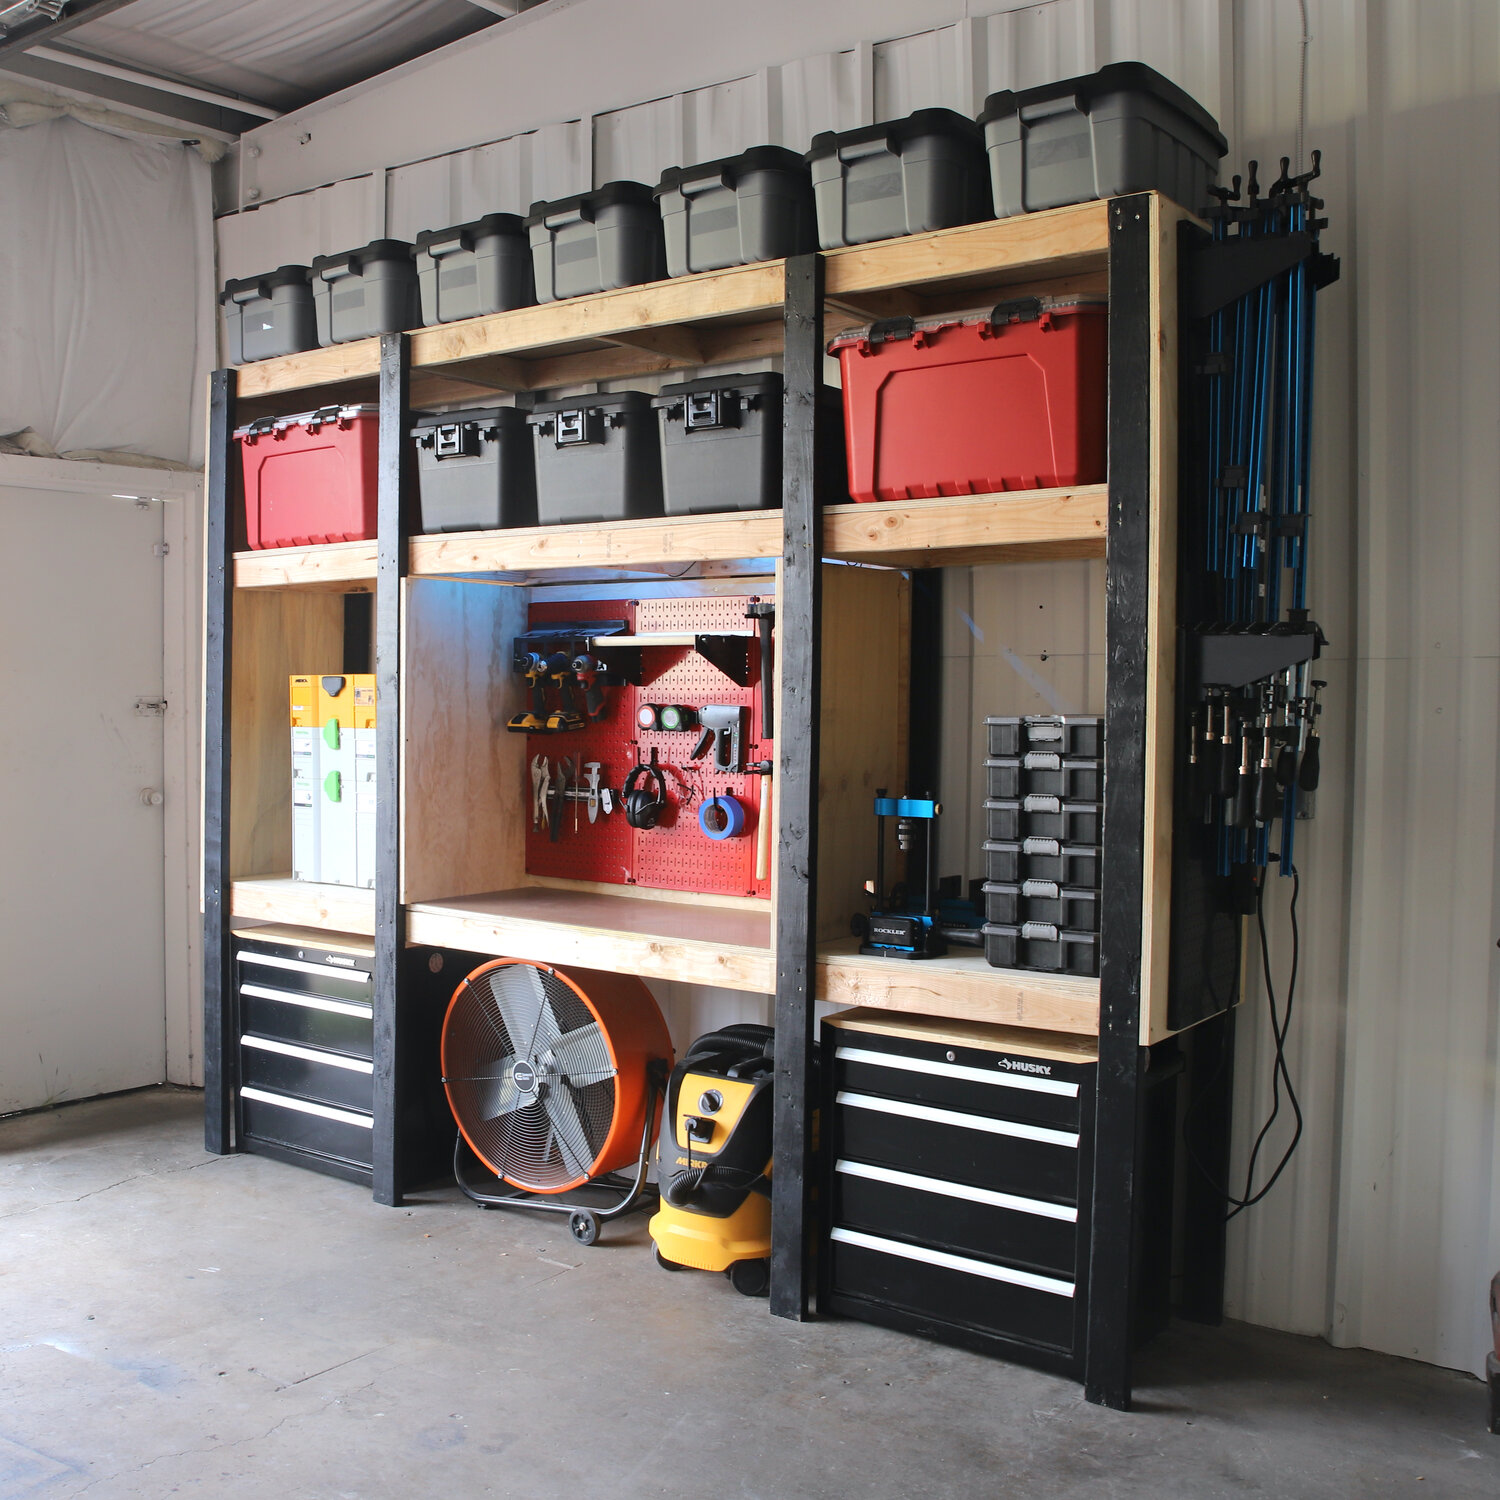 DIY Rolling Storage Shelves for the Garage